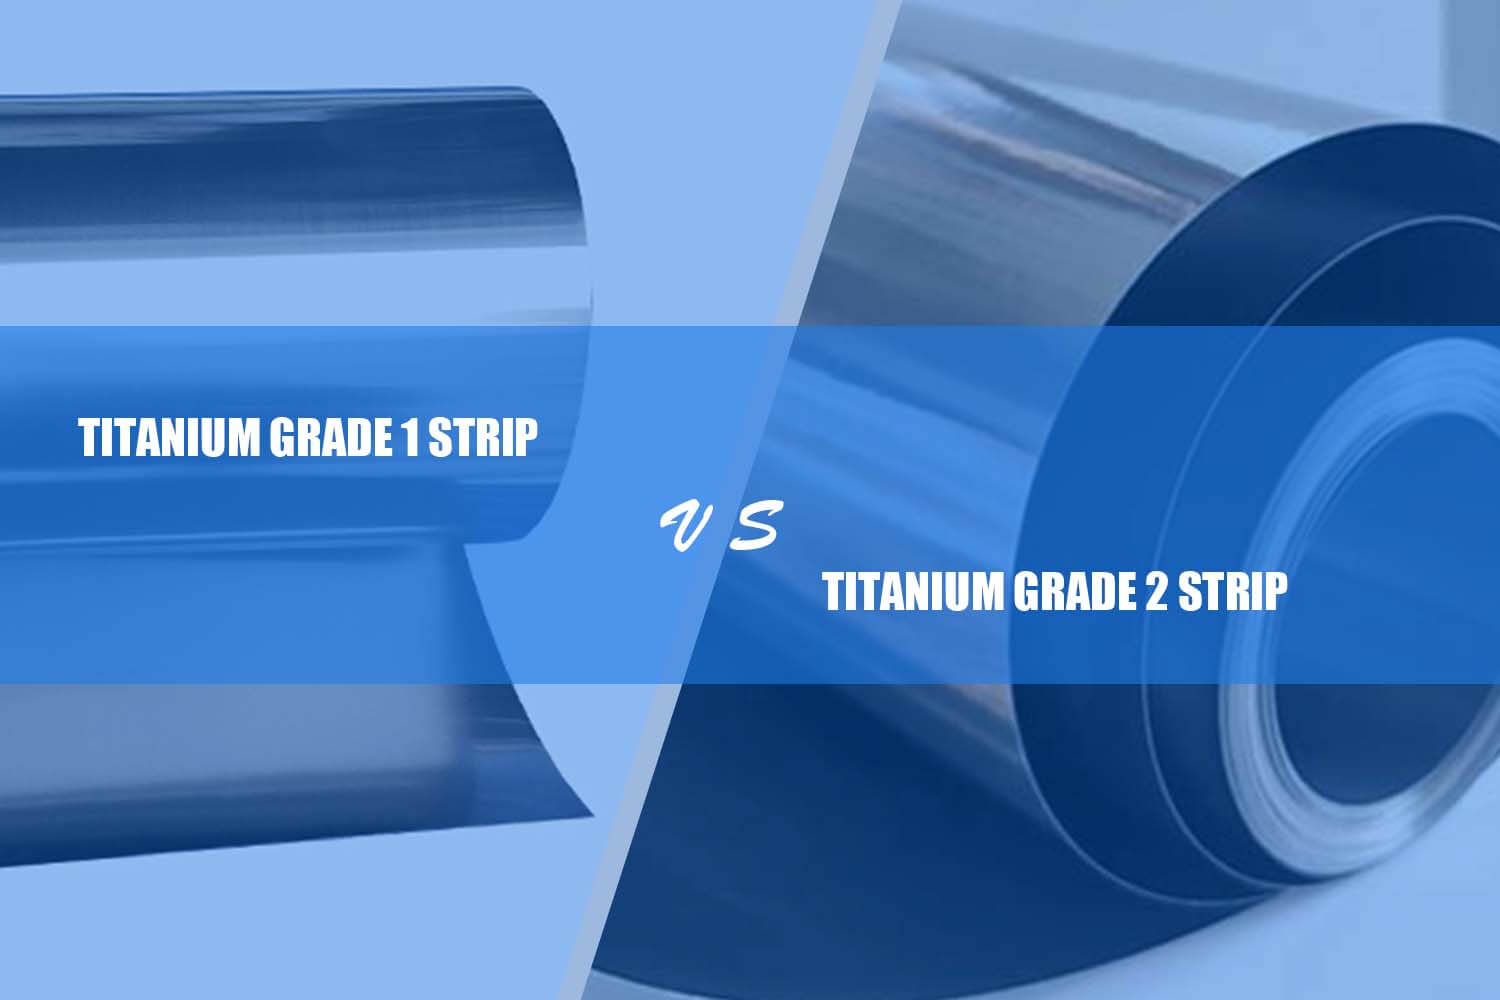 titanium grade 1 strip vs. titanium grade 2 remsa